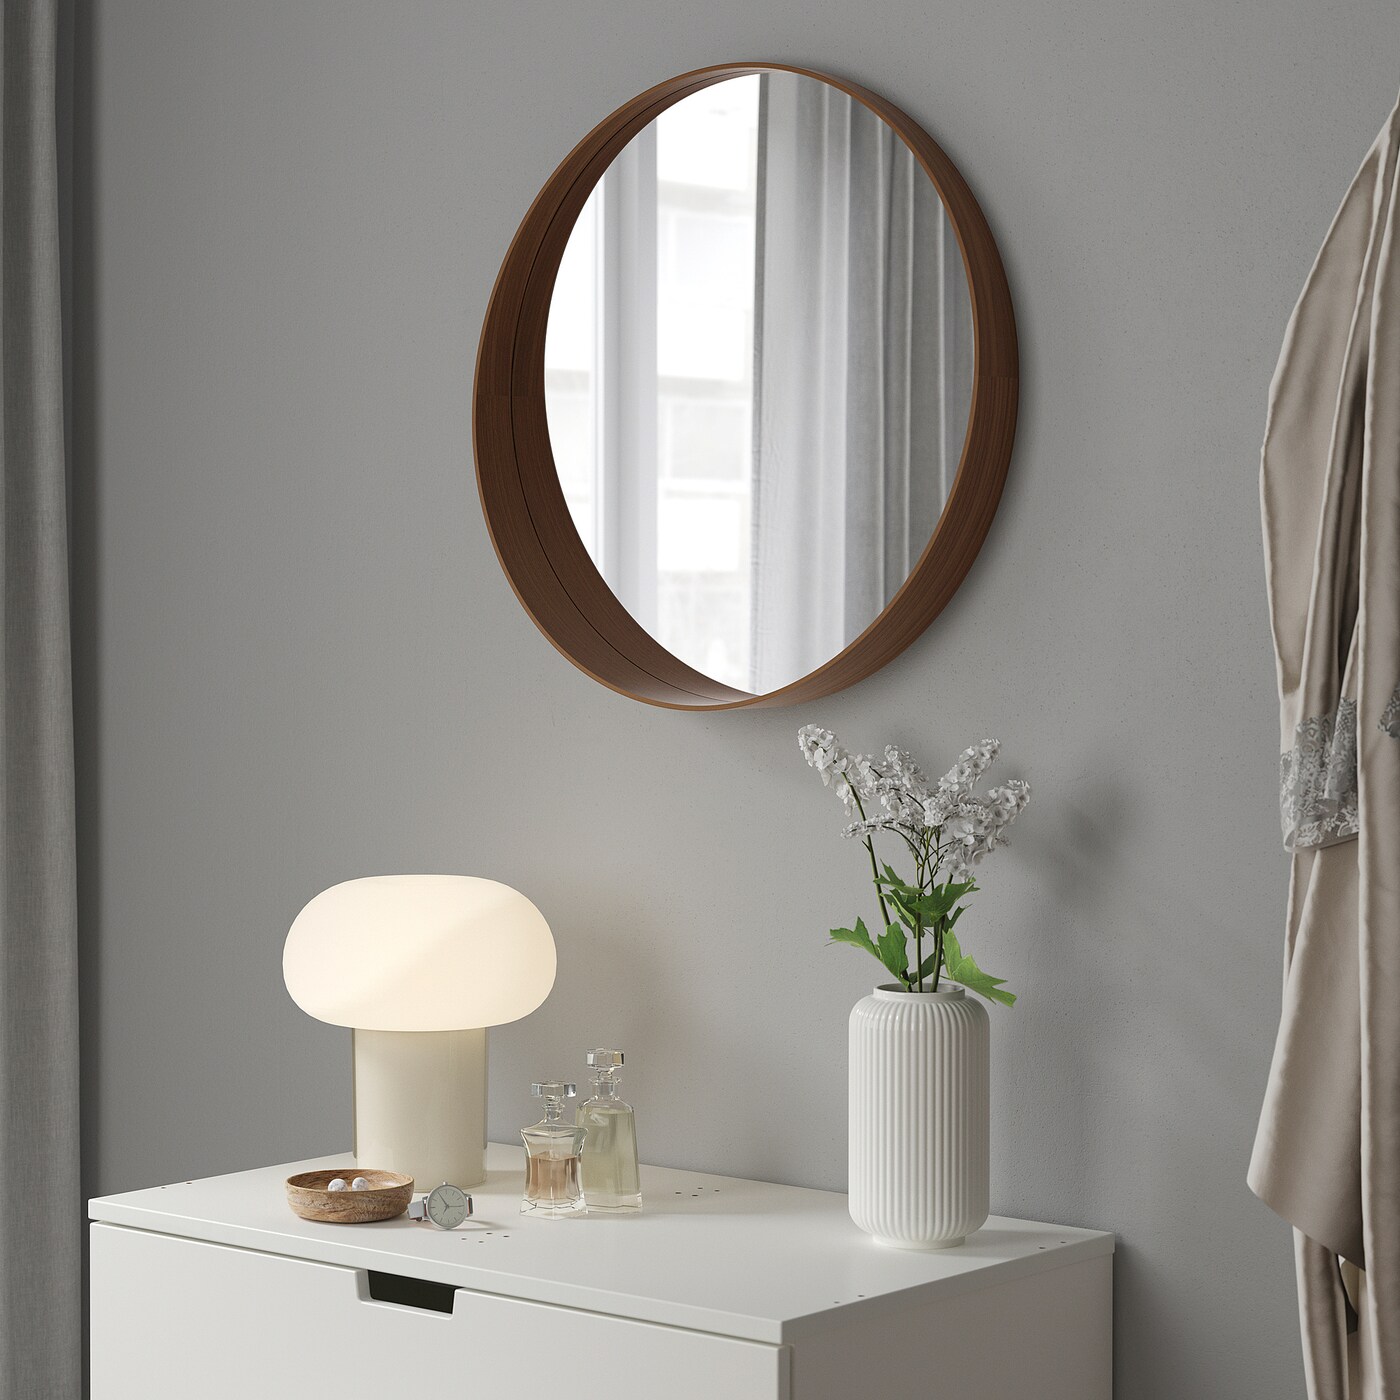 斯德哥尔摩的镜子,胡桃木单板,60厘米